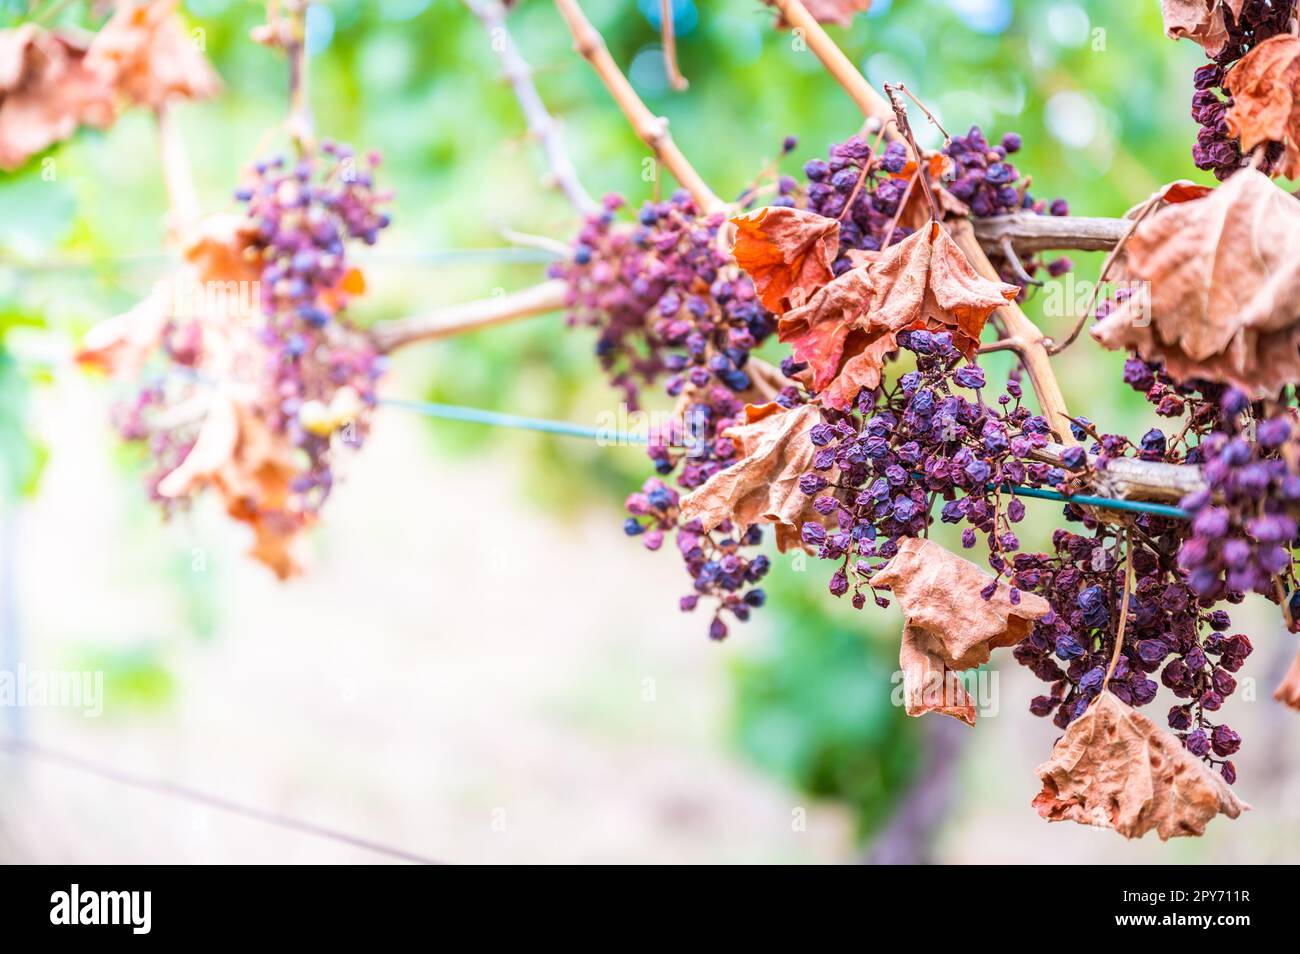 Grappoli di uva viola, troppo sole e calore, maltempo, appeso ad una pianta di vite, brutto raccolto, vigna Foto Stock